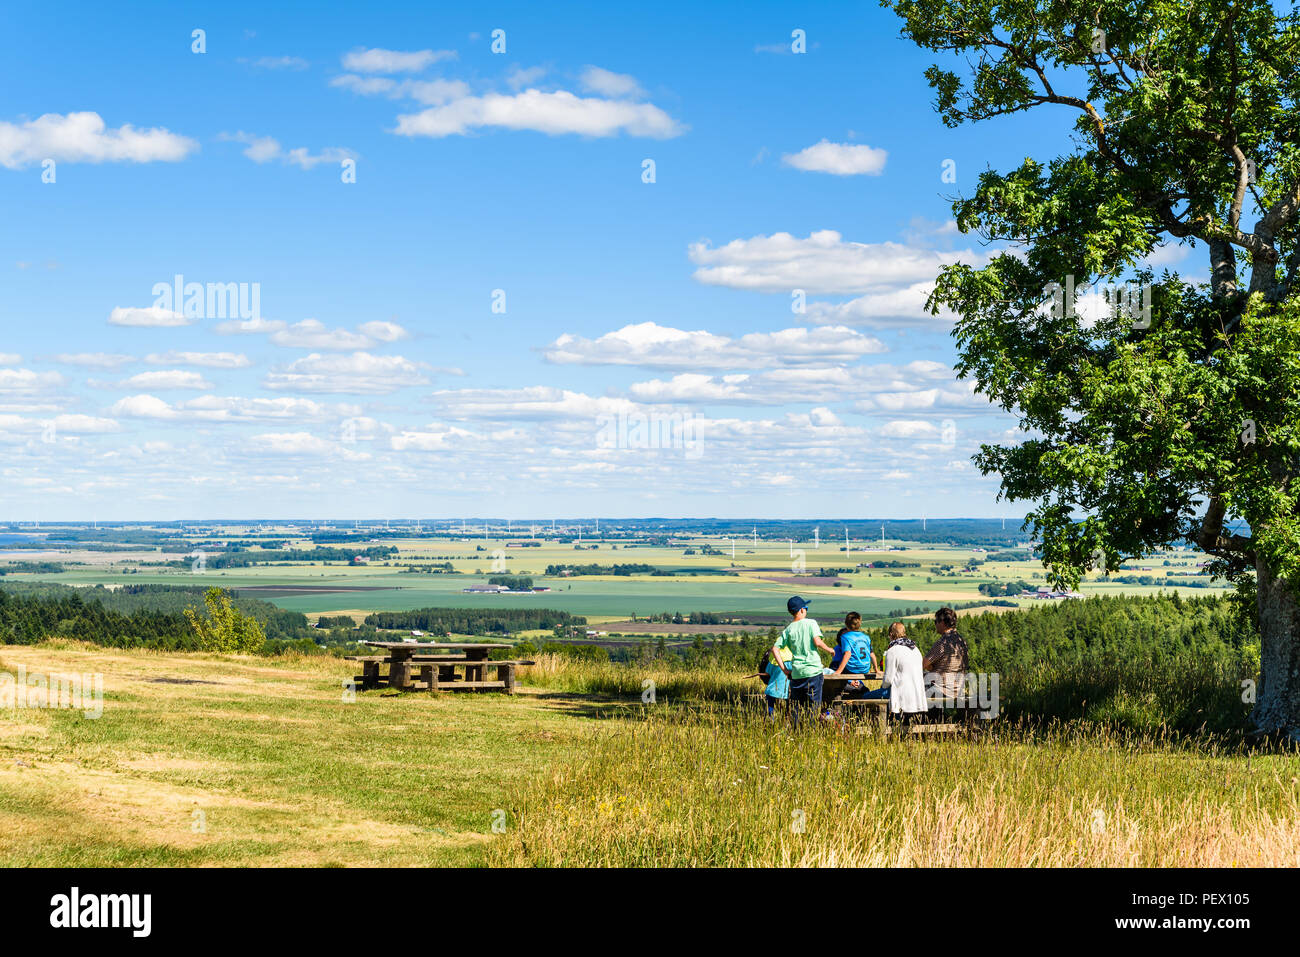 Omberg, Suède - 1 juillet 2018 : les visiteurs dans l'éco-parc en admirant la vue sur le paysage du point de vue suédois sur un Hjassan ordina Banque D'Images